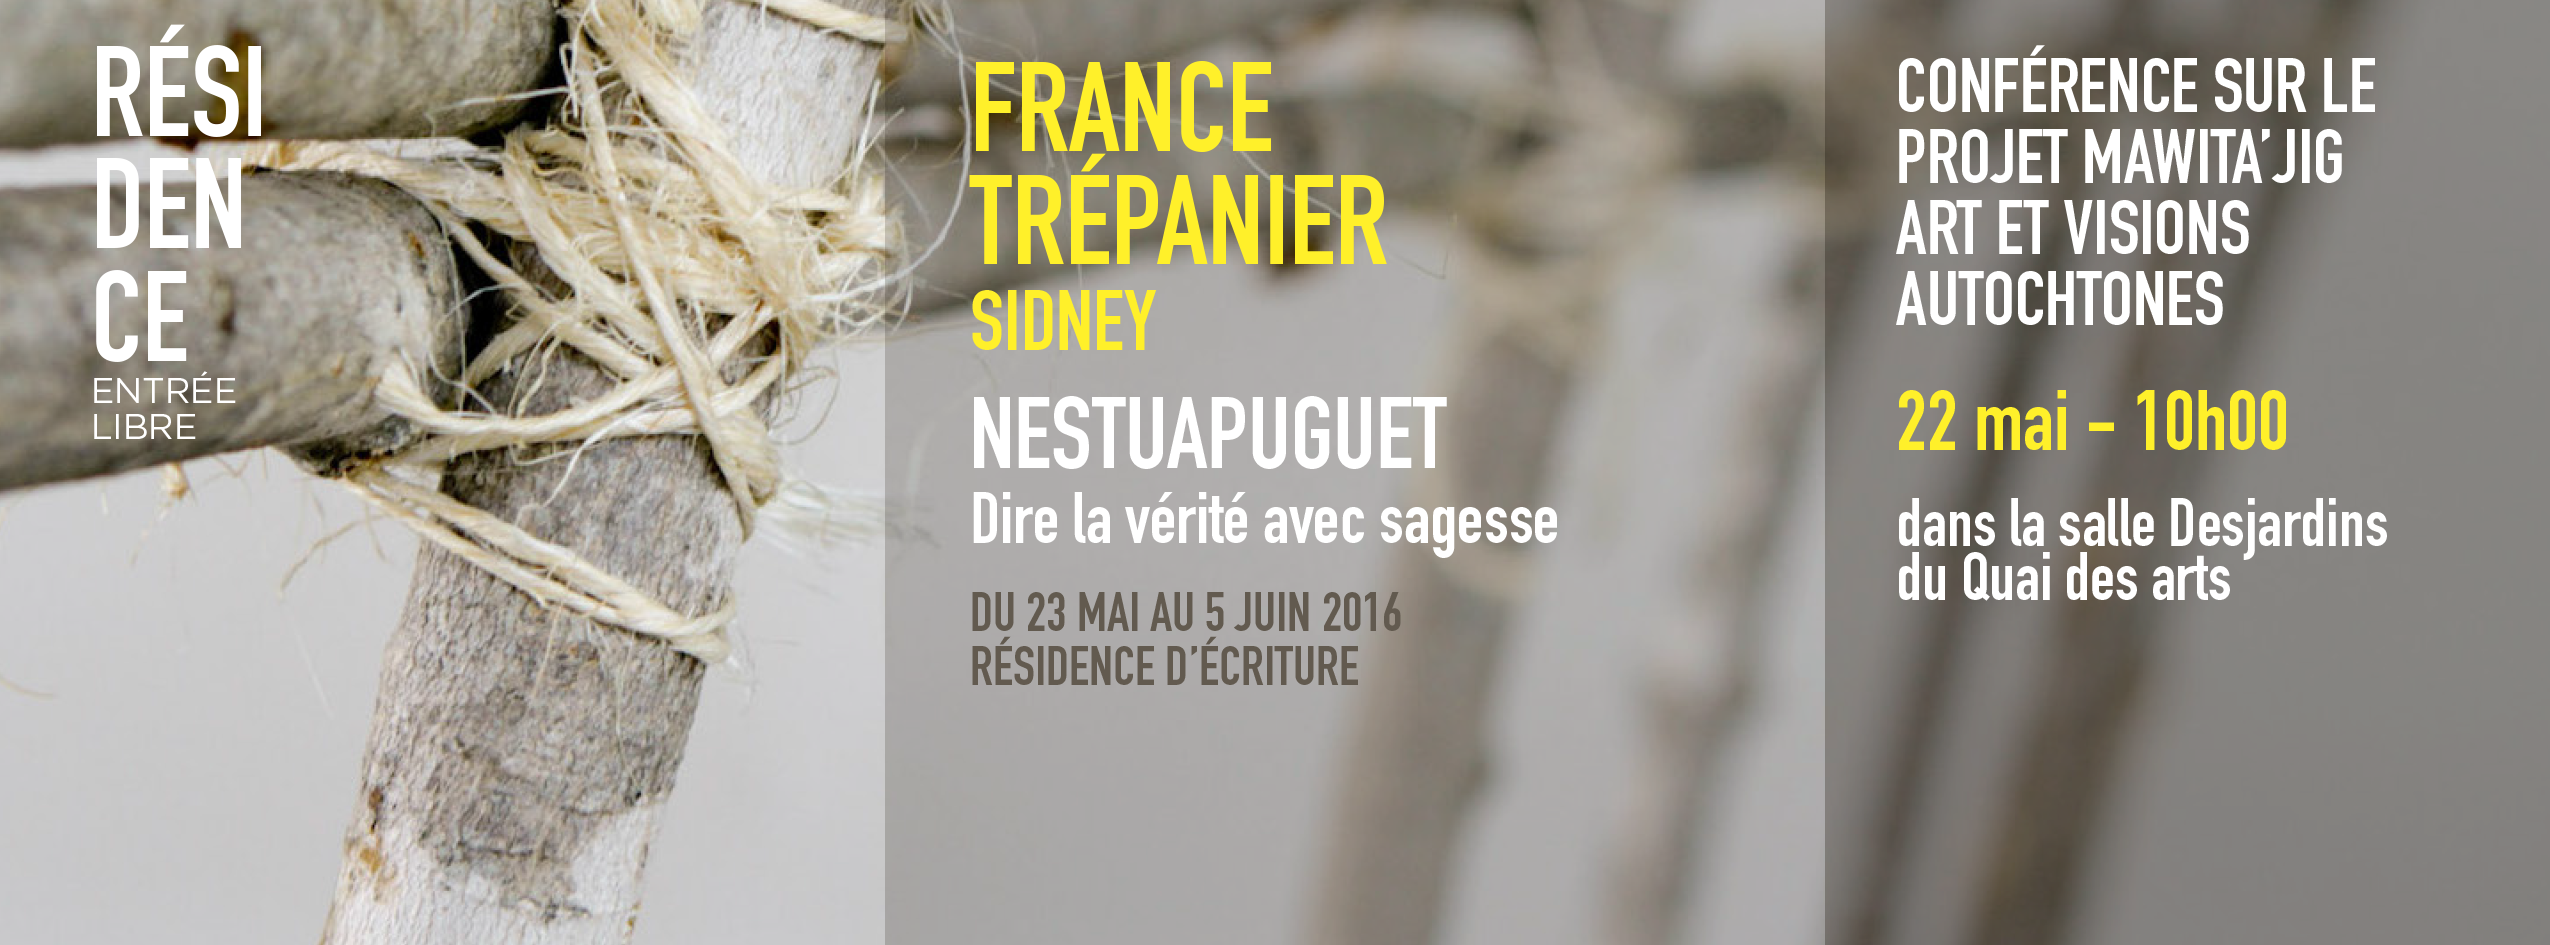 France TRÉPANIER, Sidney NESTUAPUGUET (DIRE LA VERITE AVEC SAGESSE) | Résidence d’écriture